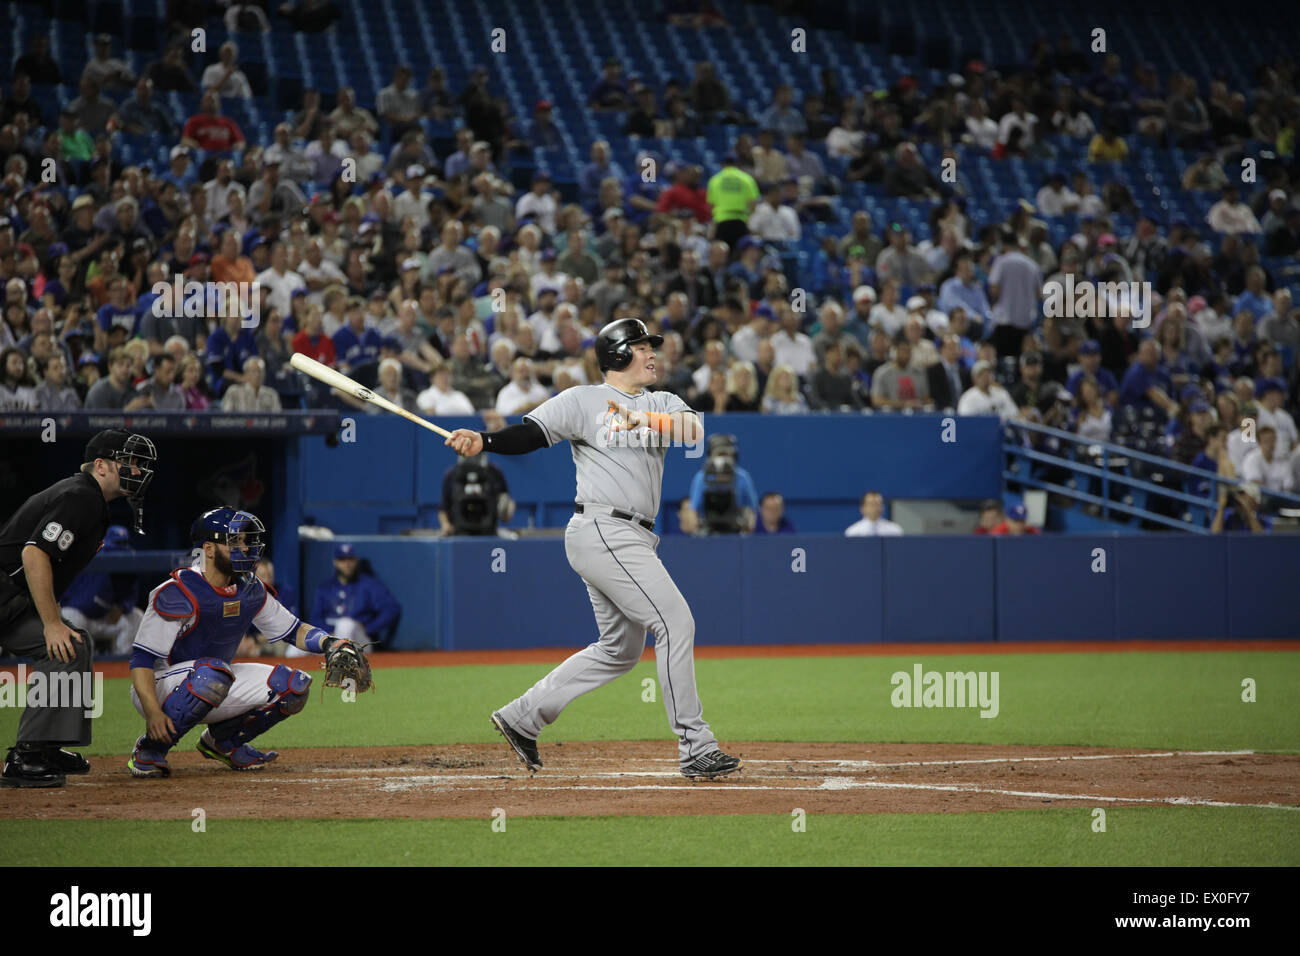 Jugador de béisbol MLB swinging bat Foto de stock